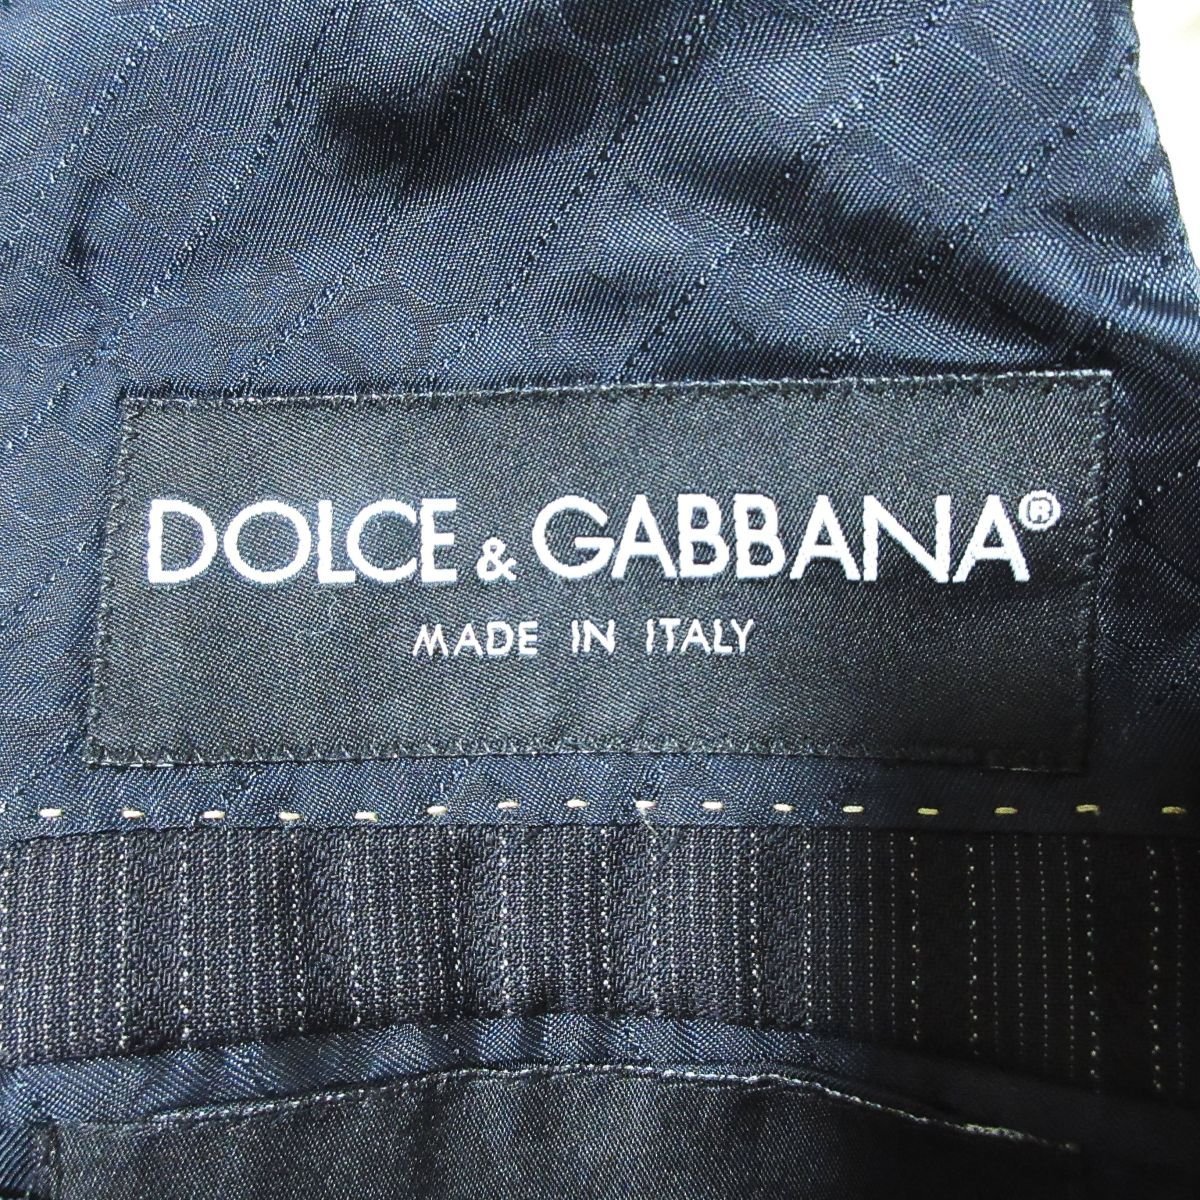  хорошая вещь DOLCE&GABBANA Dolce & Gabbana полоса 1B одиночный tailored jacket 48 чёрный черный 